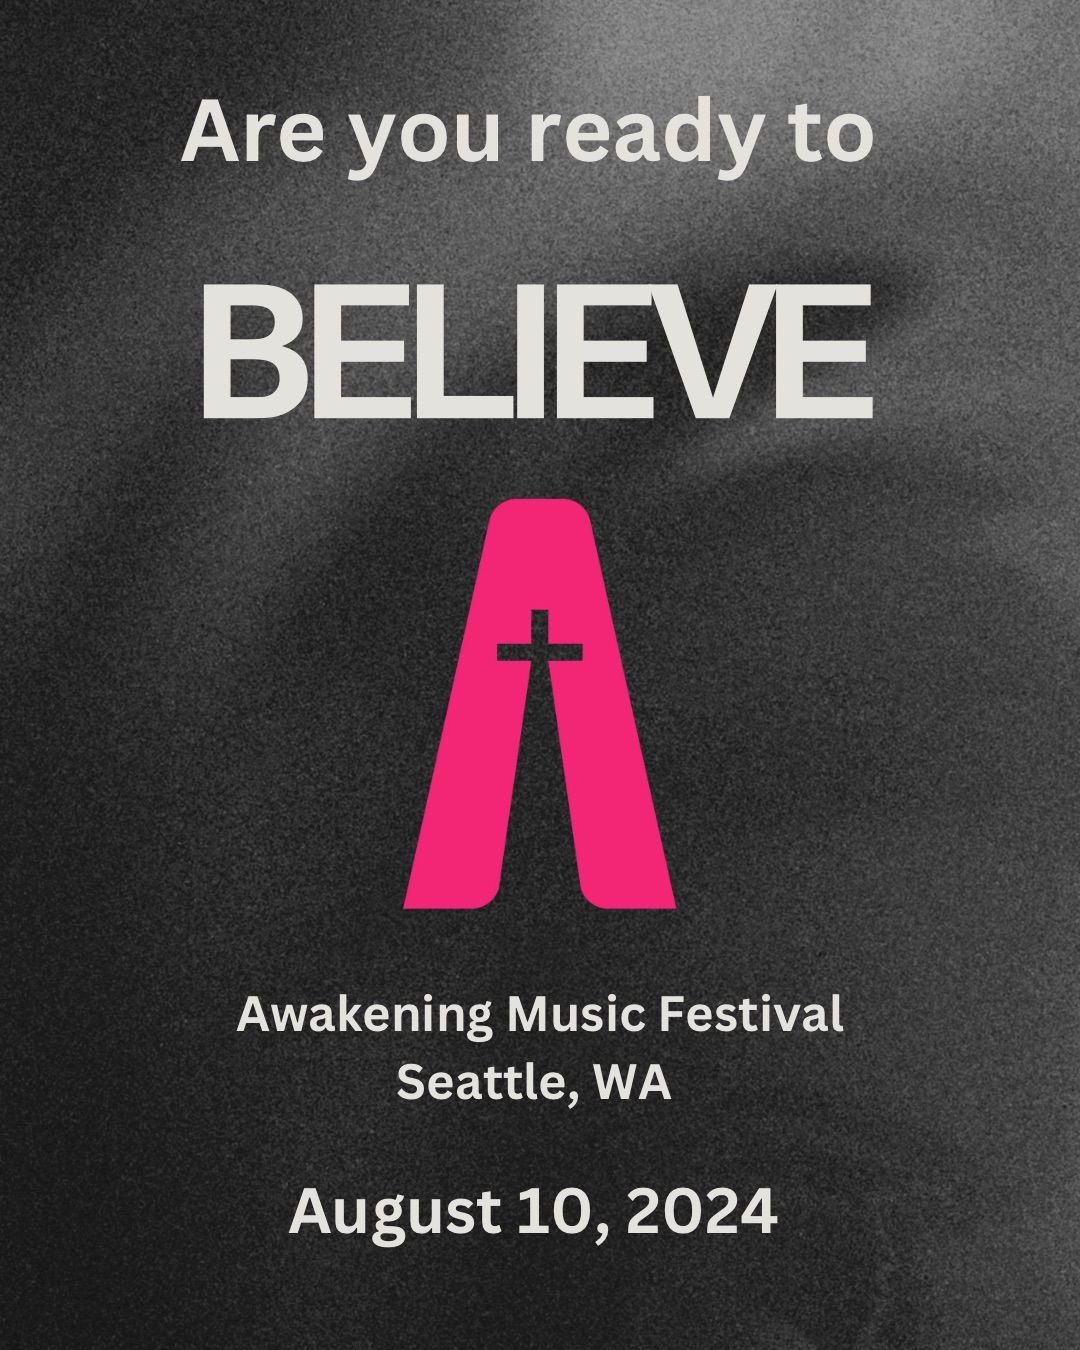 Awakening Music Festival